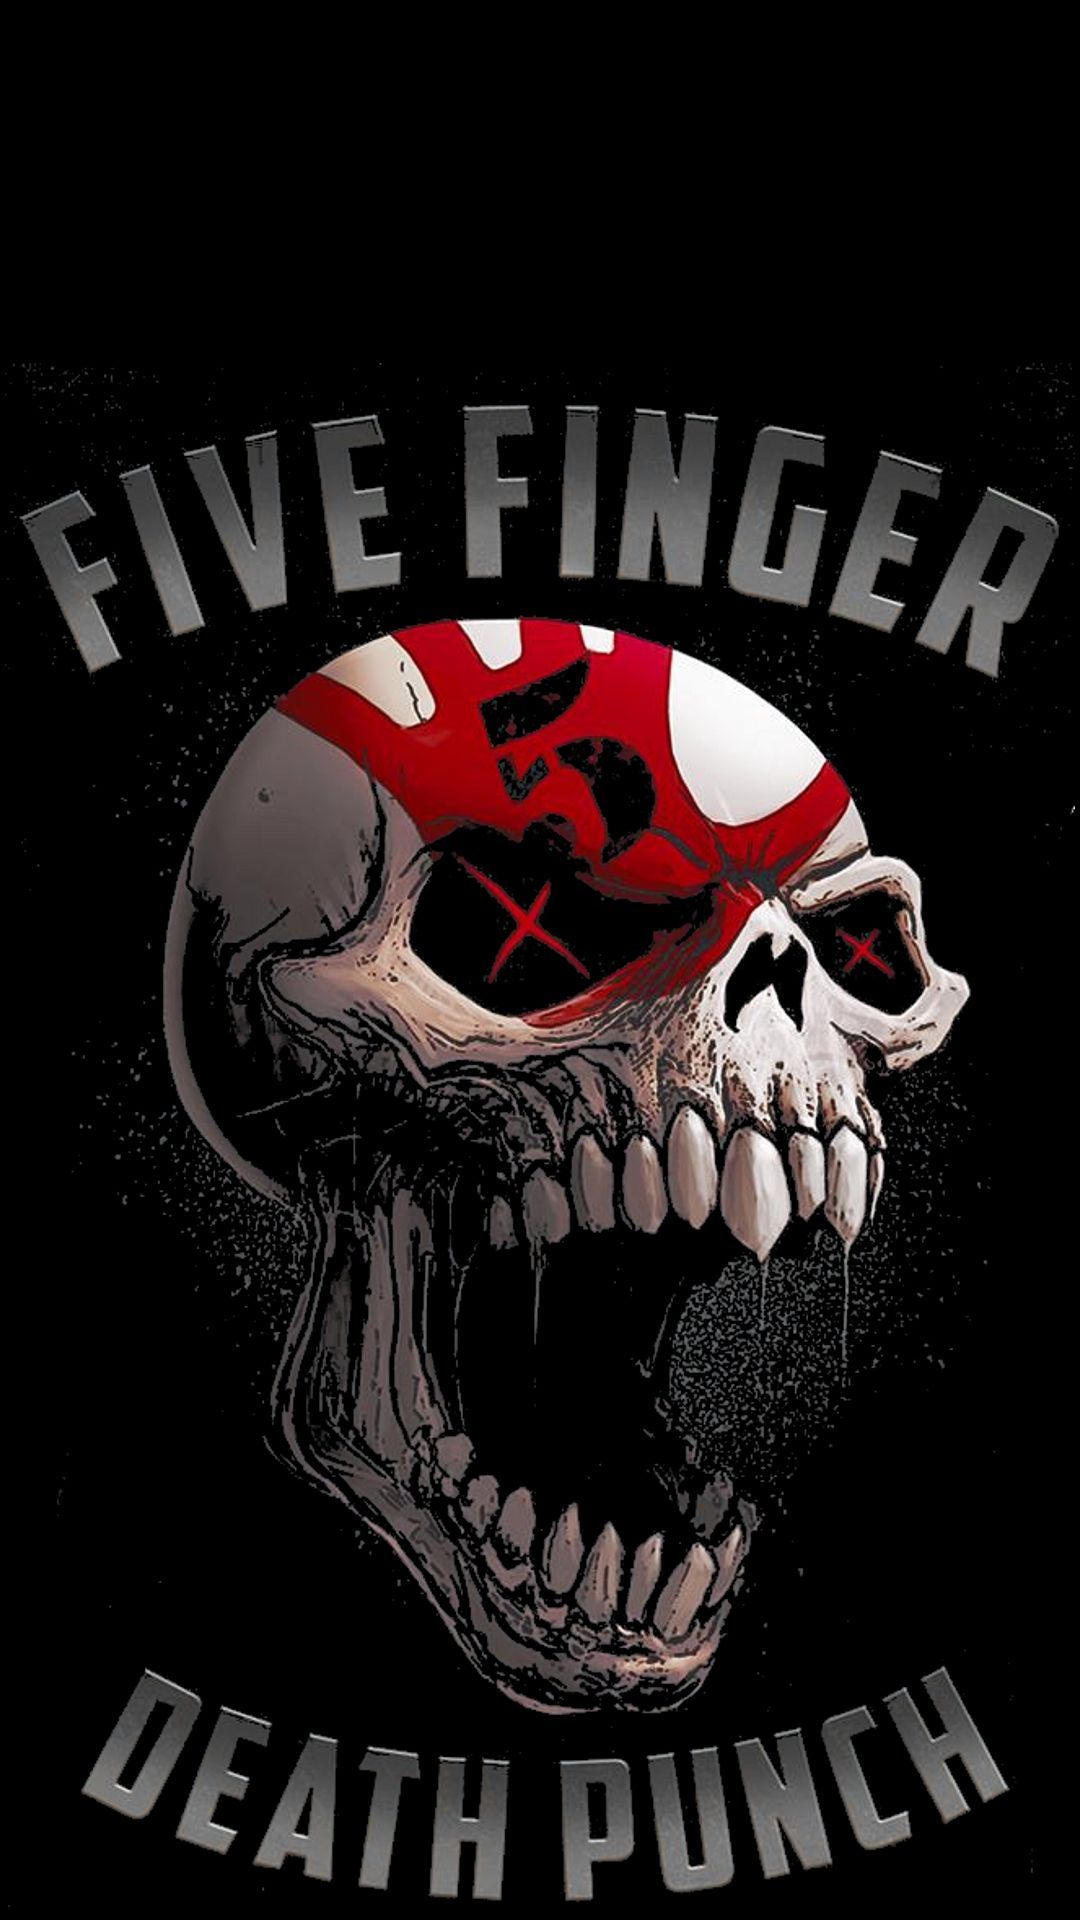 Five Finger Death Punch Skull